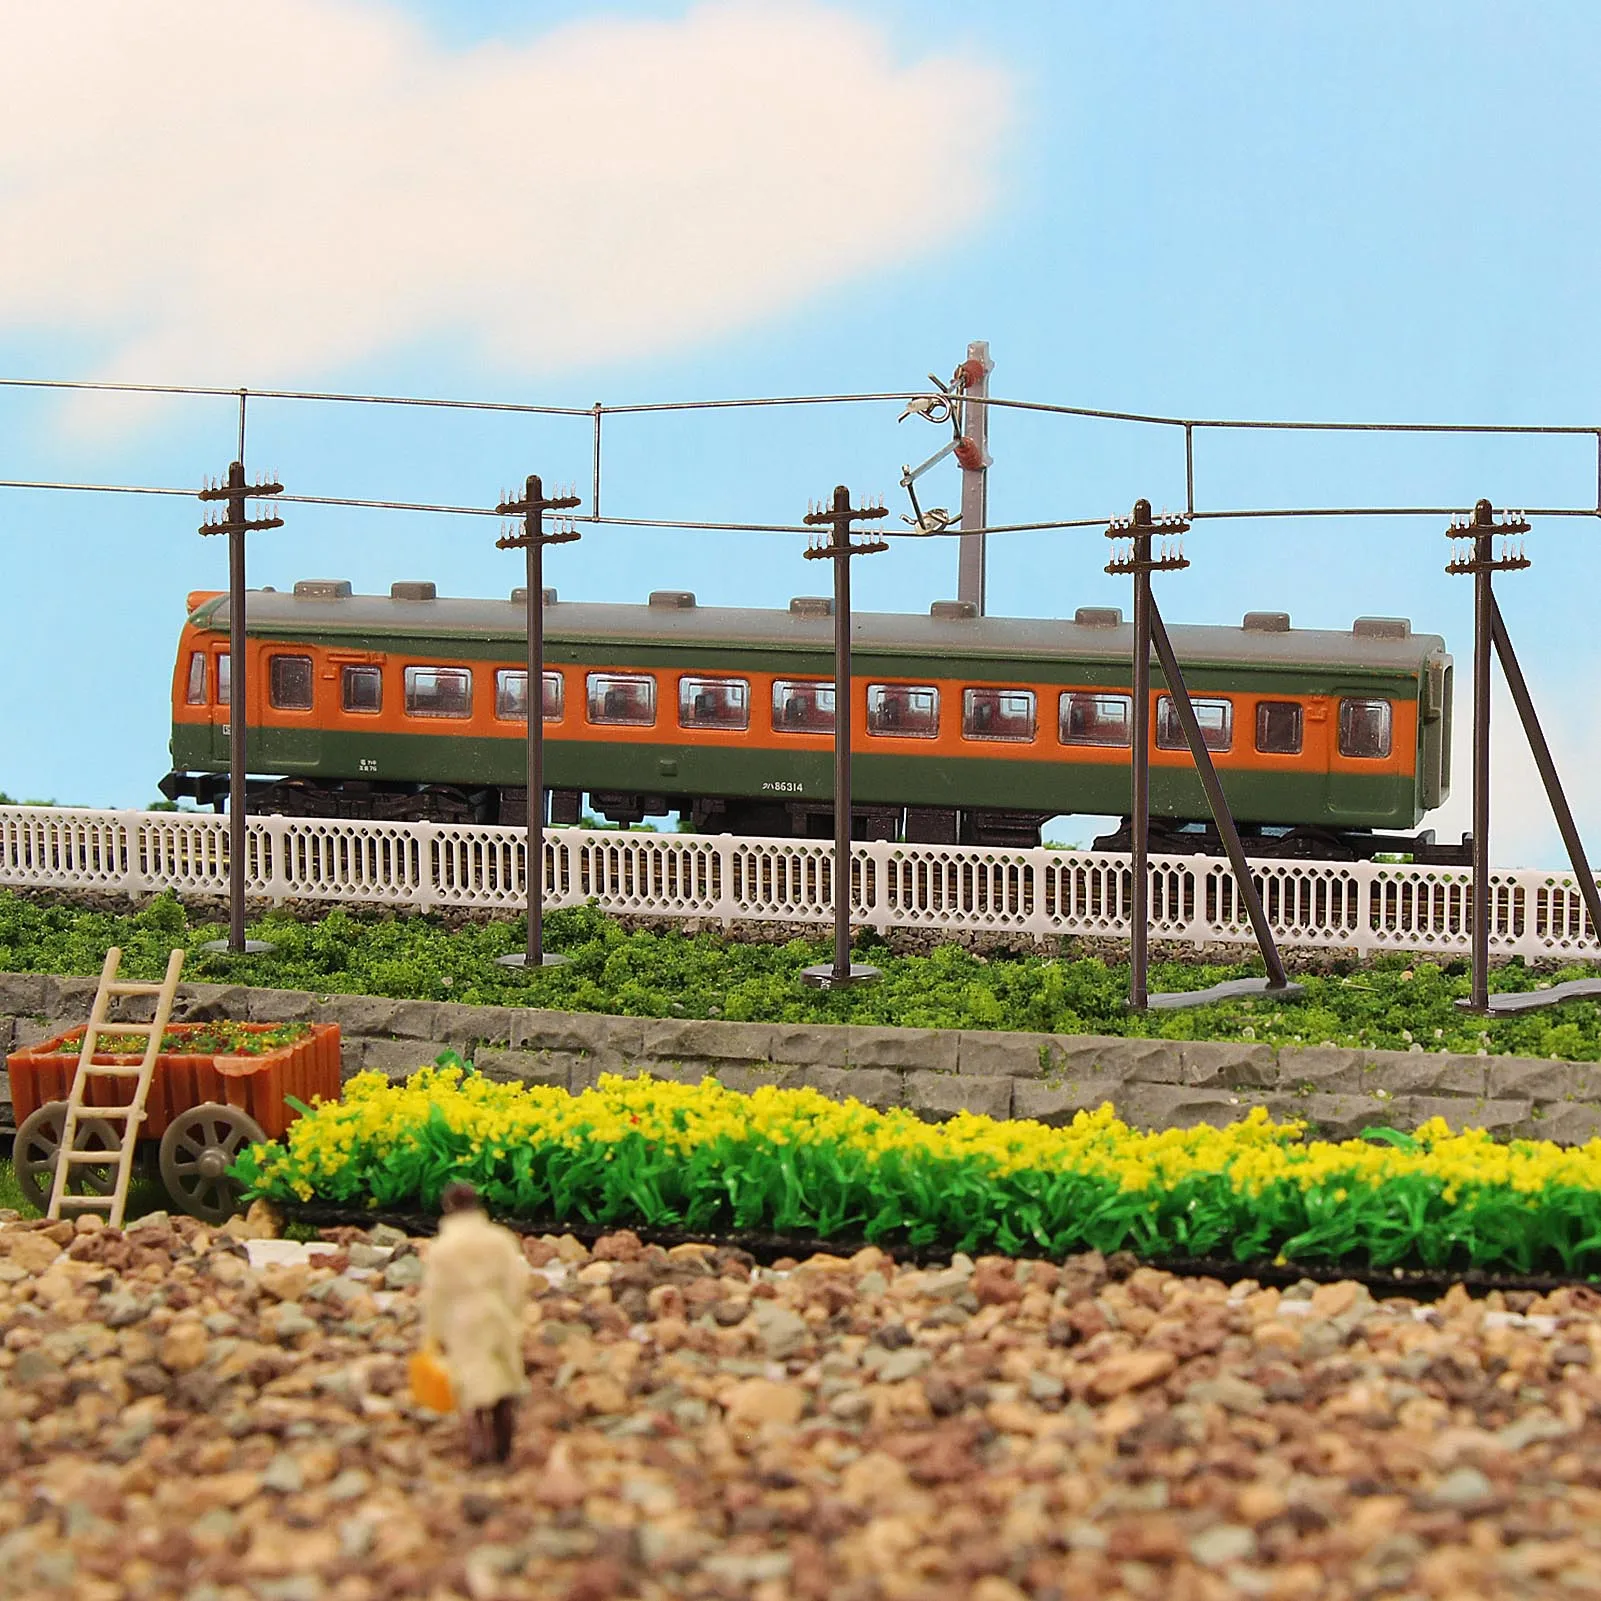 evemodel pces modelo trens escala pólos de energia pólos telegráficos diorama railroad